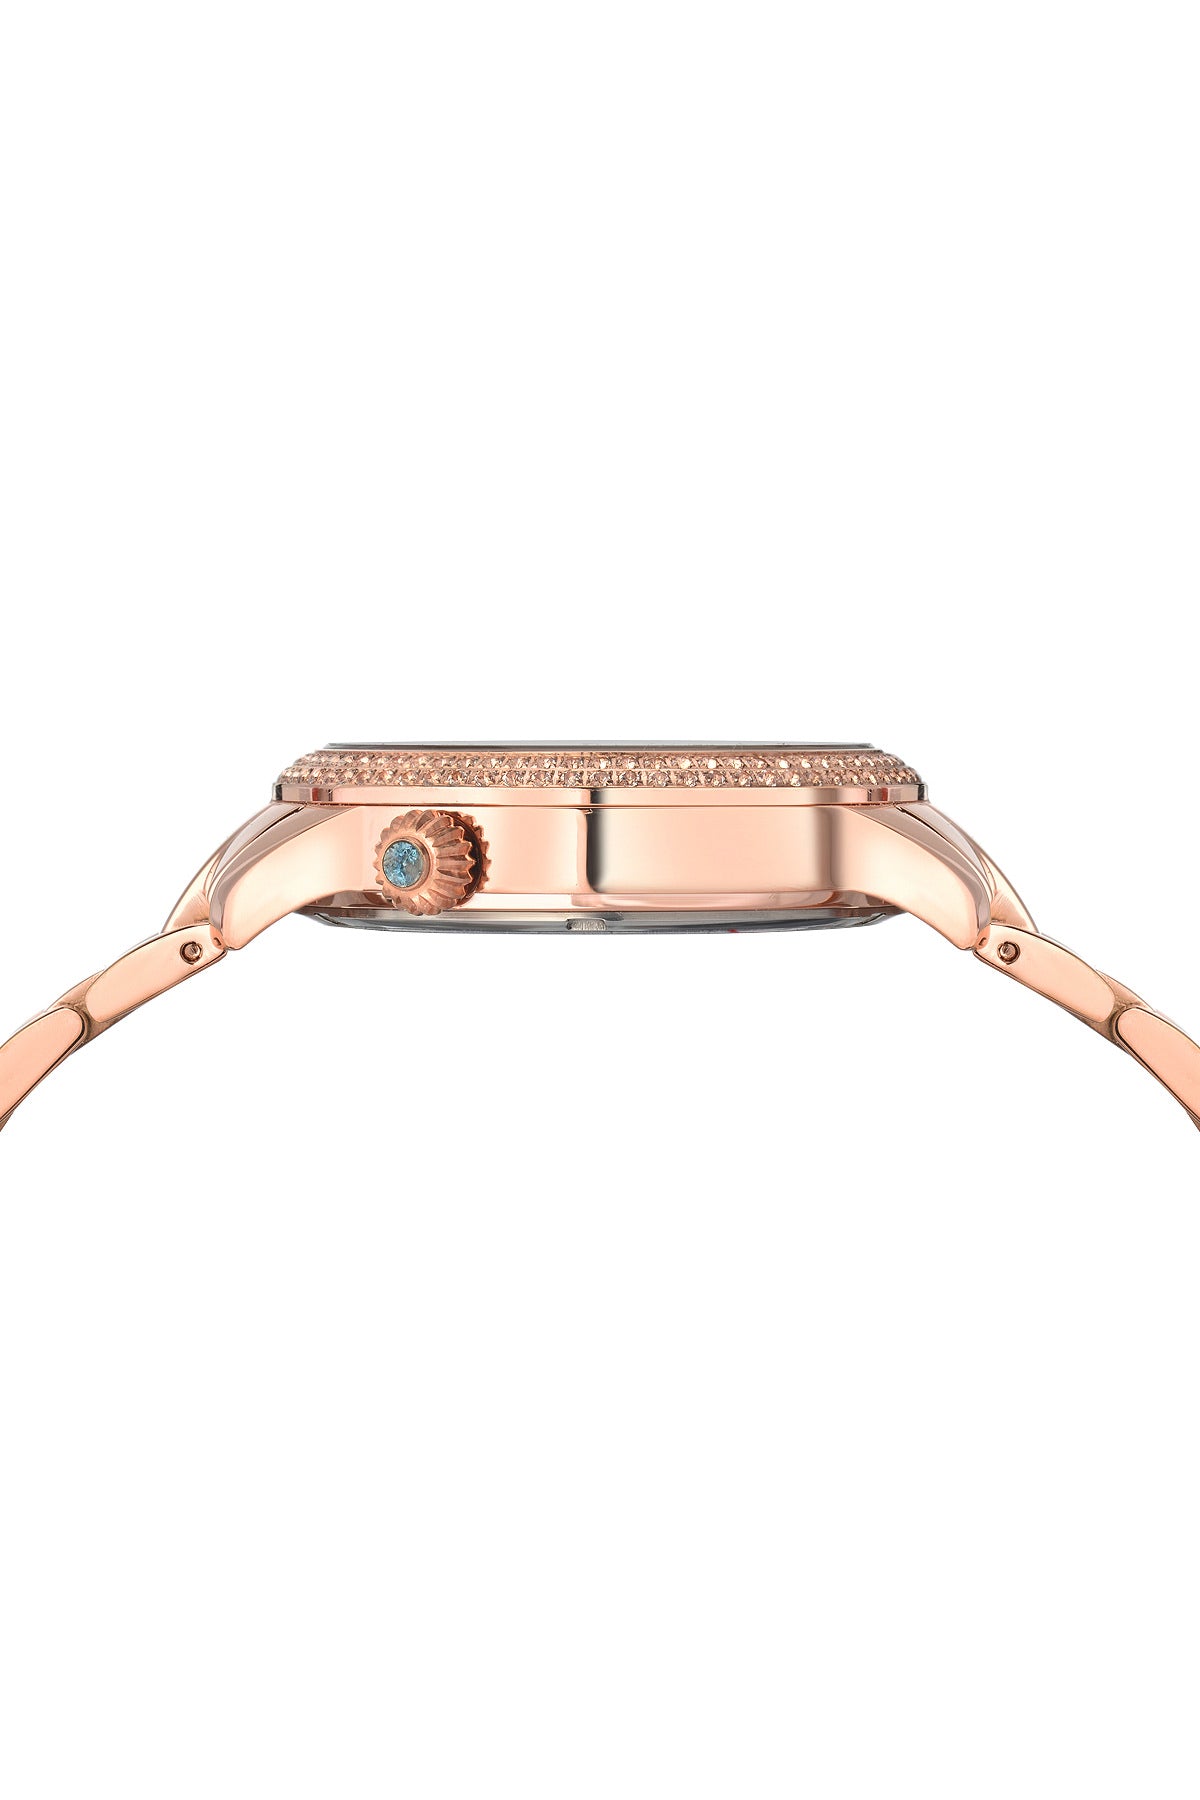 Porsamo Bleu Evelyn luxury topaz women's stainless steel watch, rose, white 761CEVS